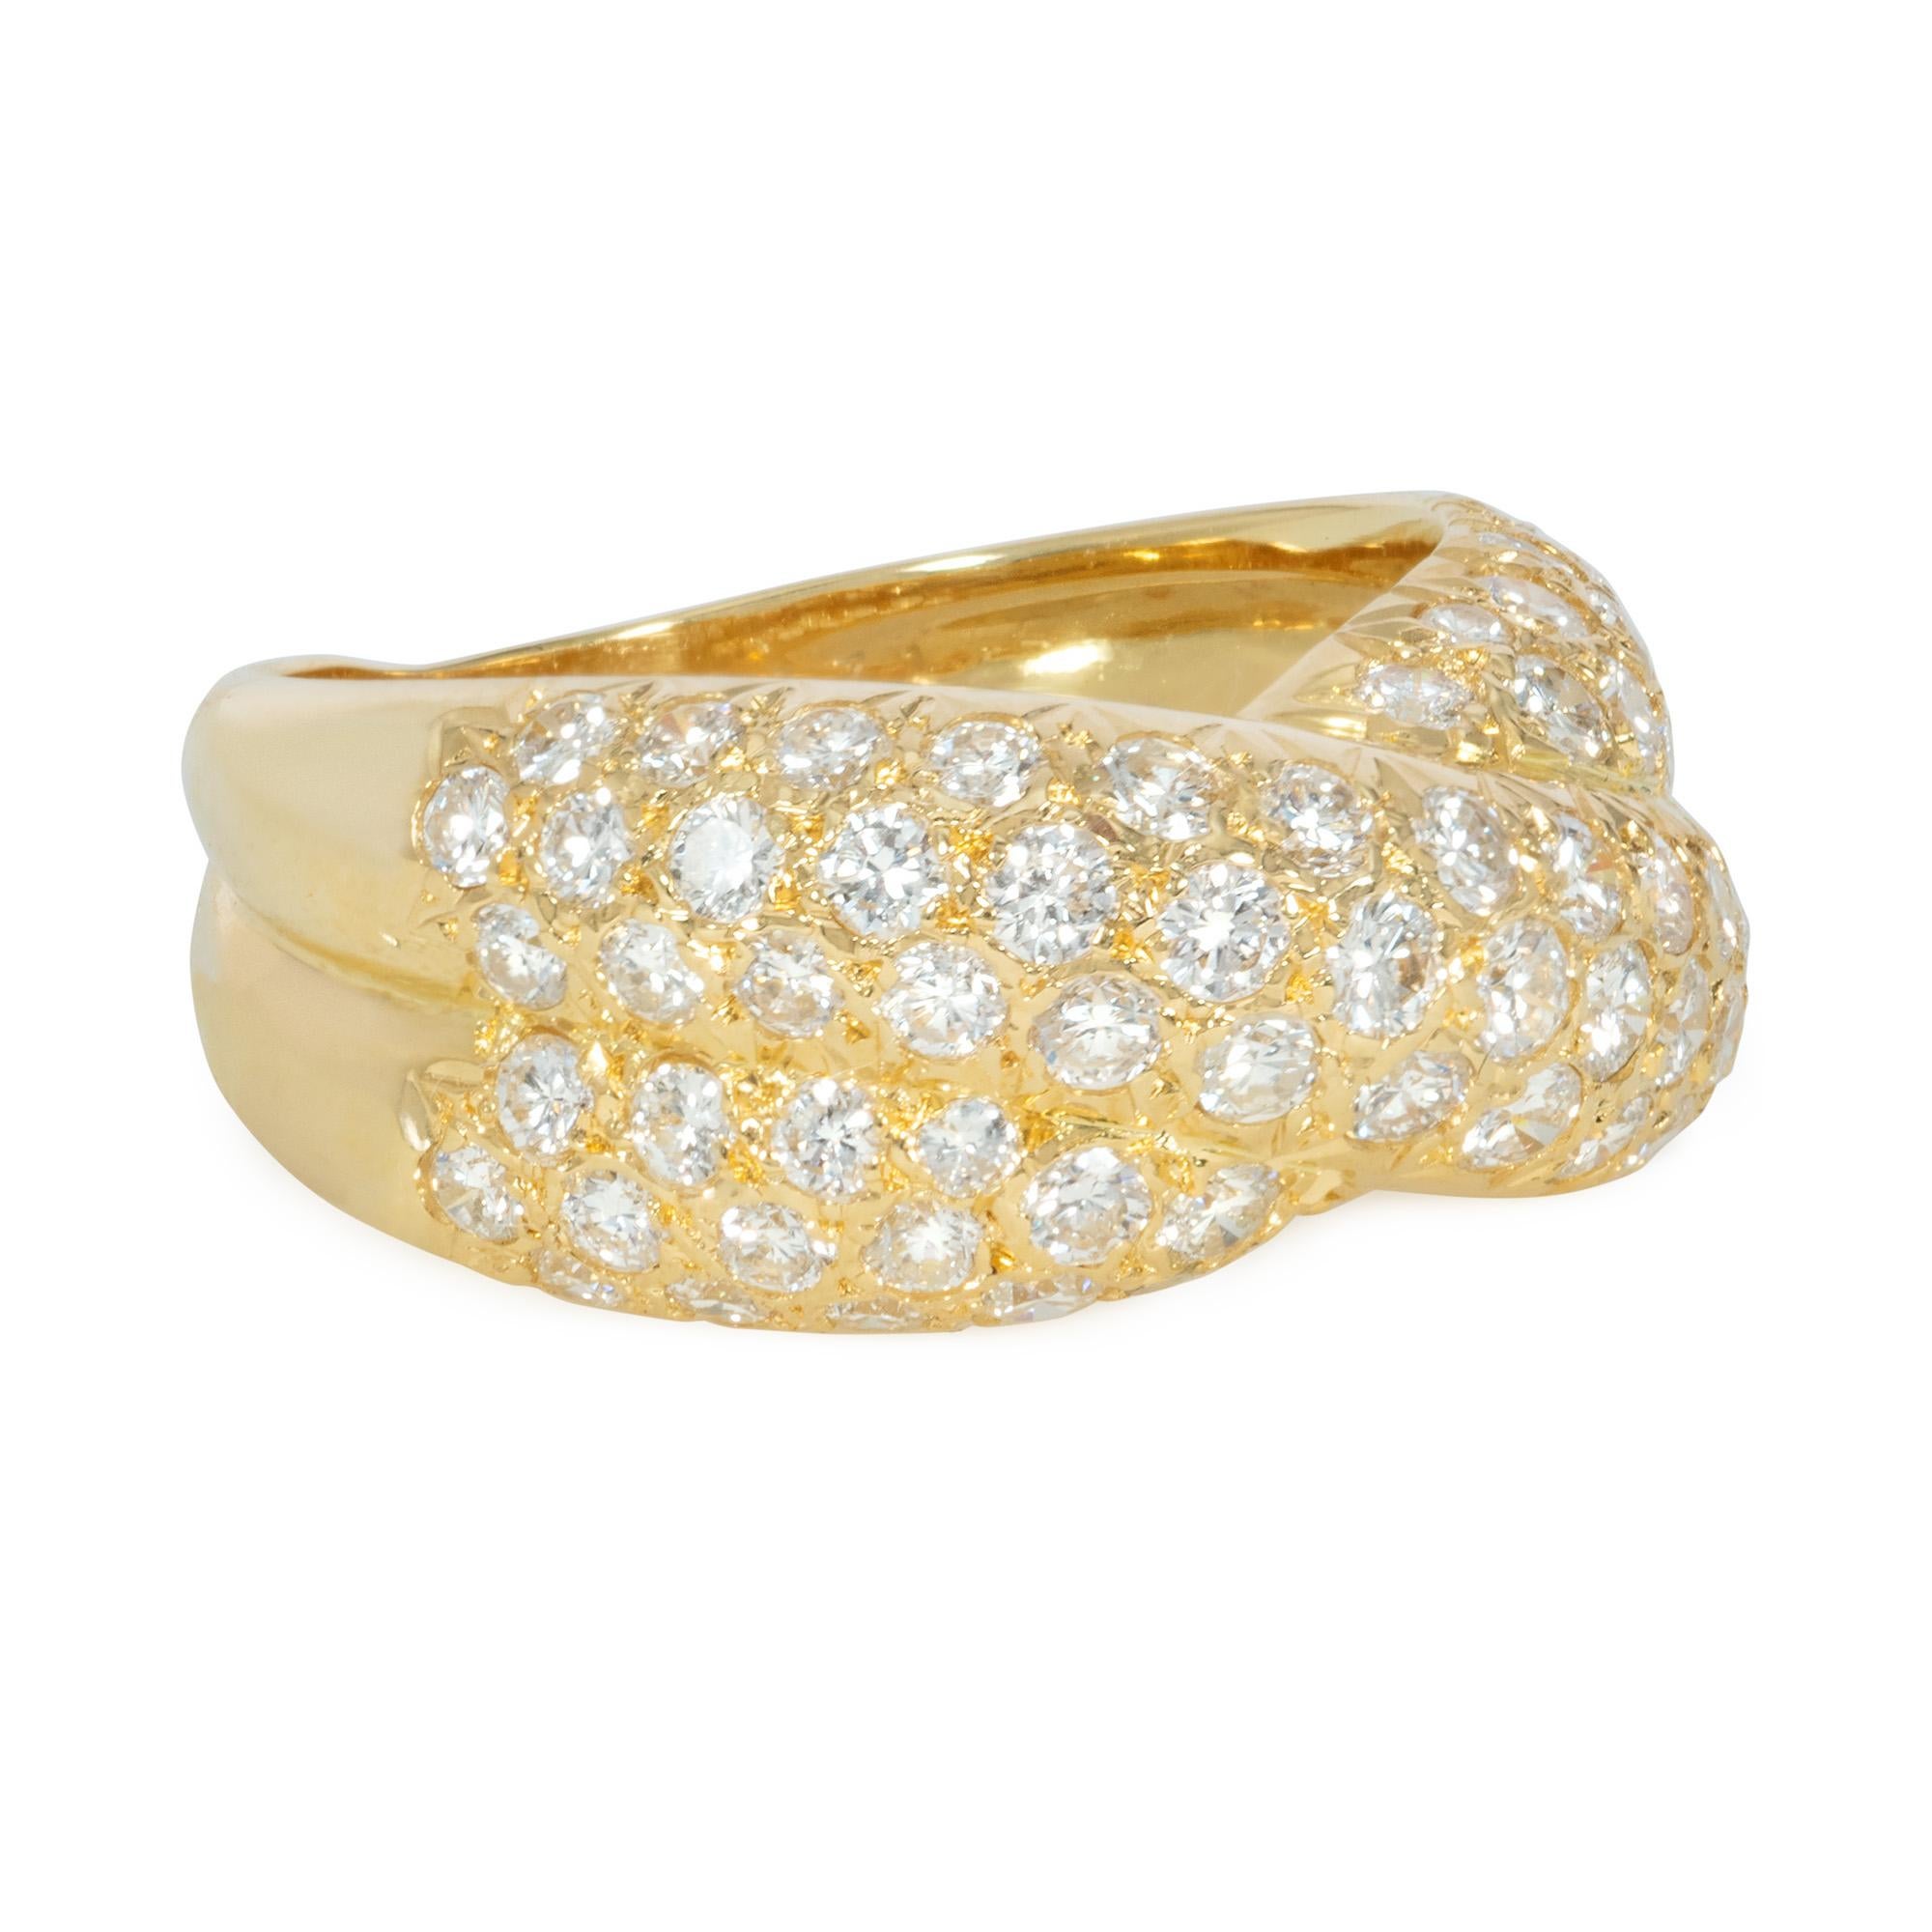 Bague en or et diamants pavés en forme de turban ou de croisée, en 18k. Van Cleef & Arpels, Paris.  Numéroté C5161 A14171.  Atw 1.71 cts.  Largeur : 9mm

Taille actuelle : 6,5 ; la taille peut être réduite à l'aide d'un ressort fixé à l'intérieur de